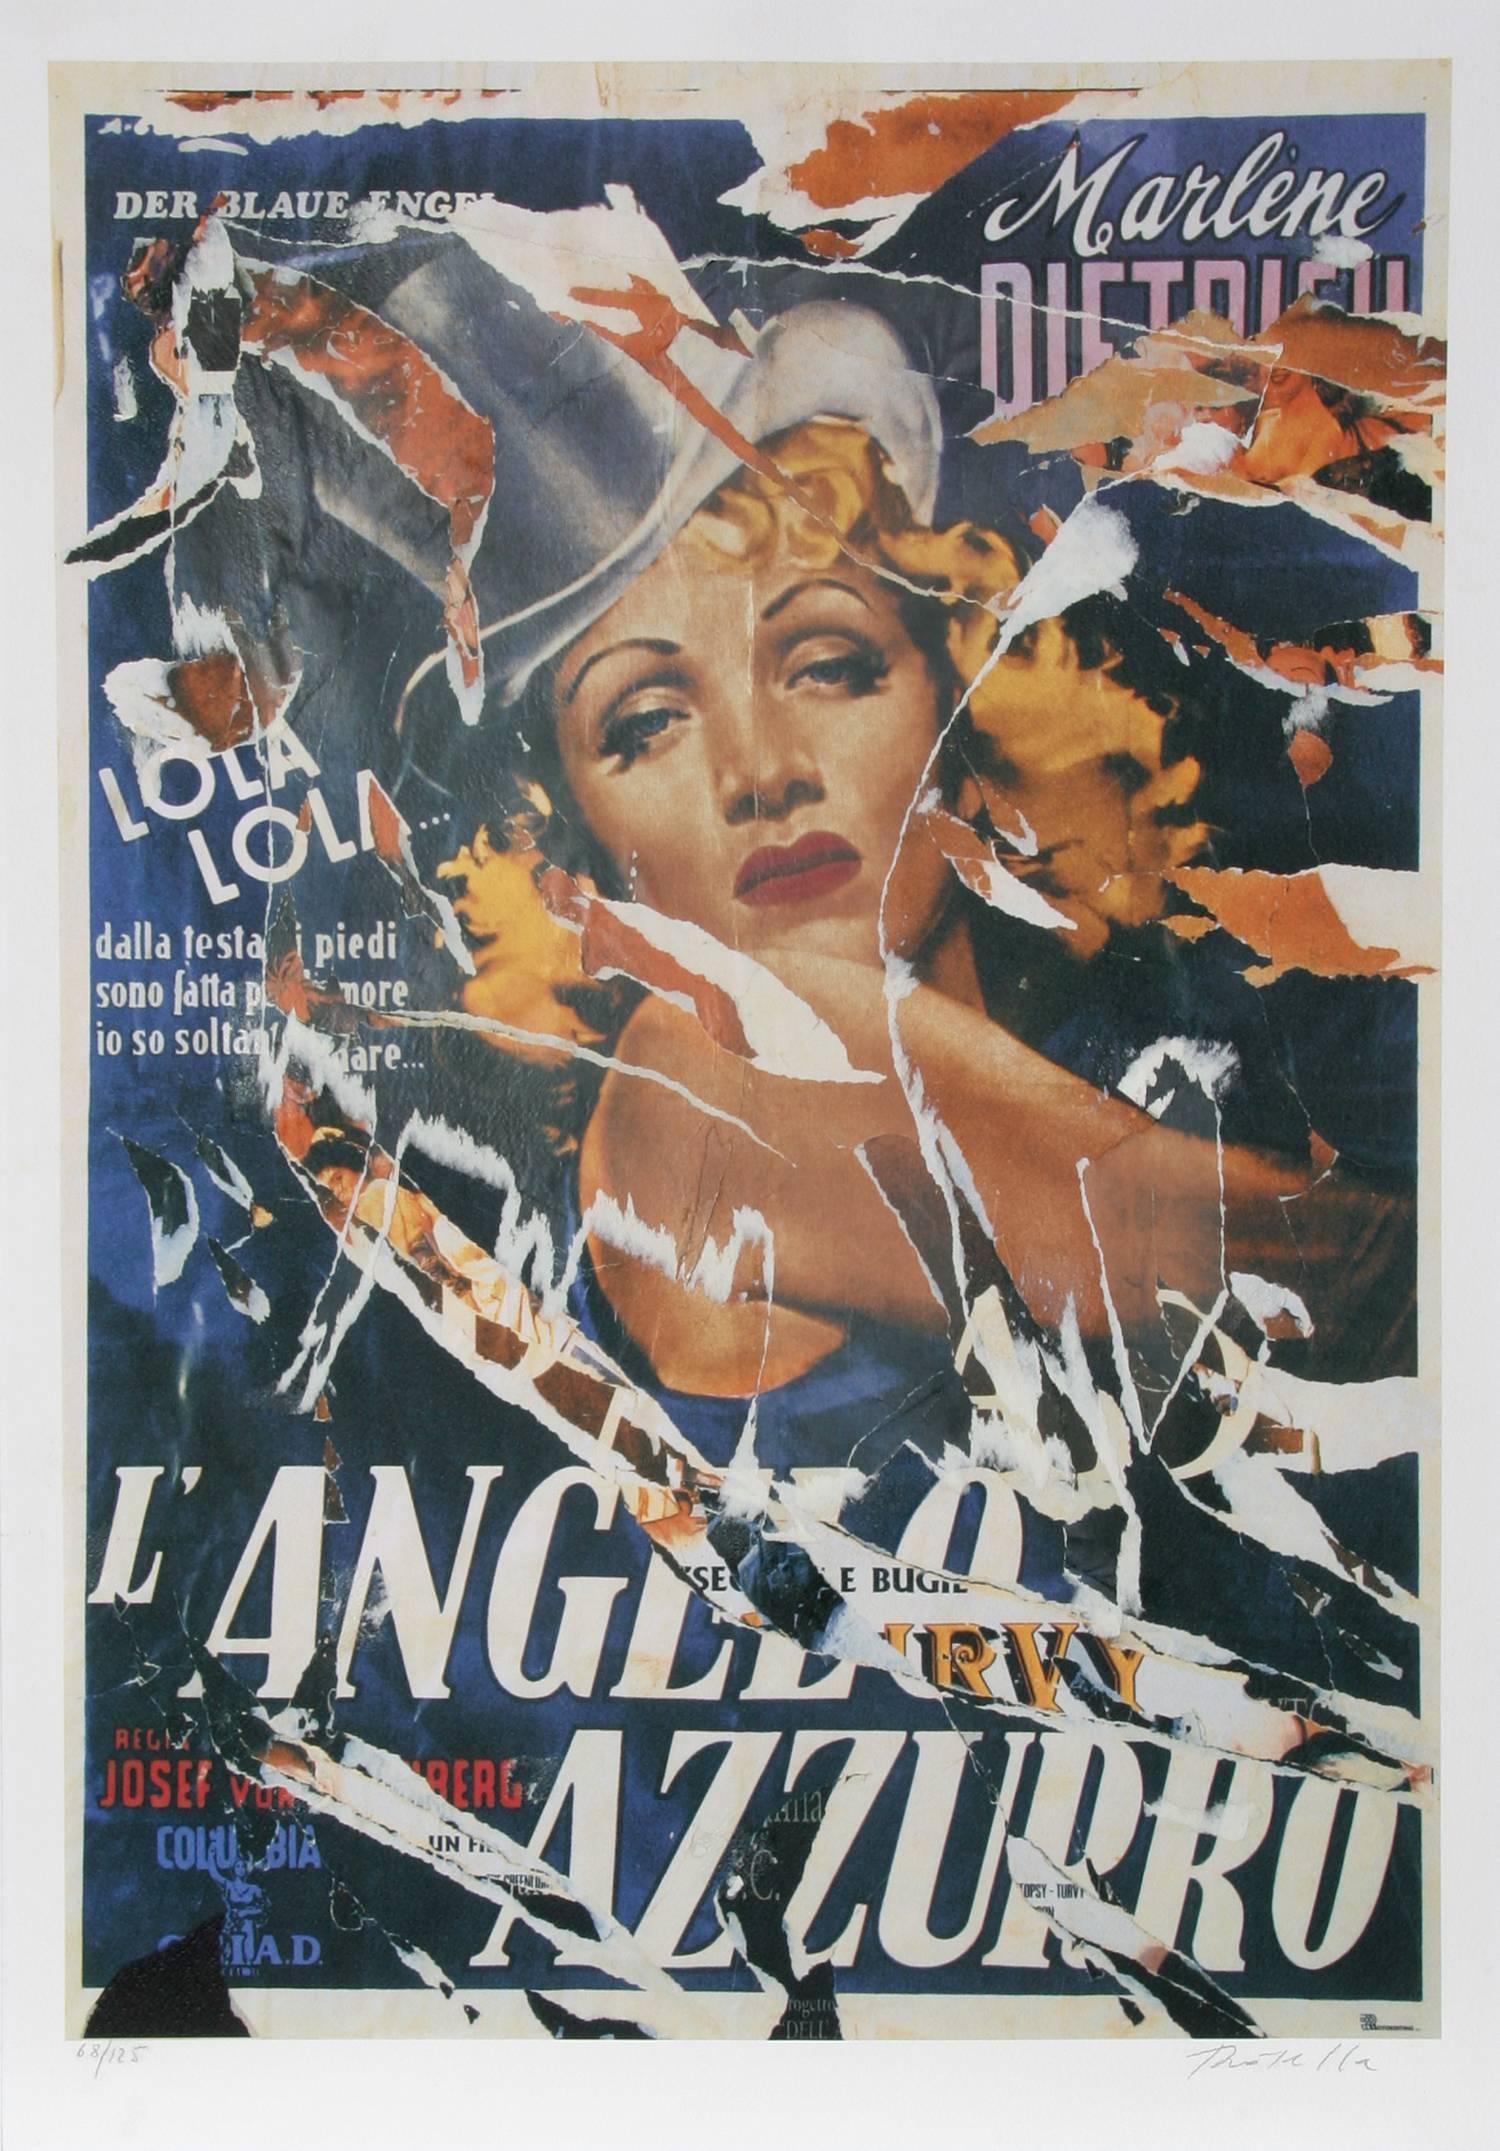 Made to Order Love (Marlene Dietrich) – Der blaue Engel, Siebdruck von Rotella